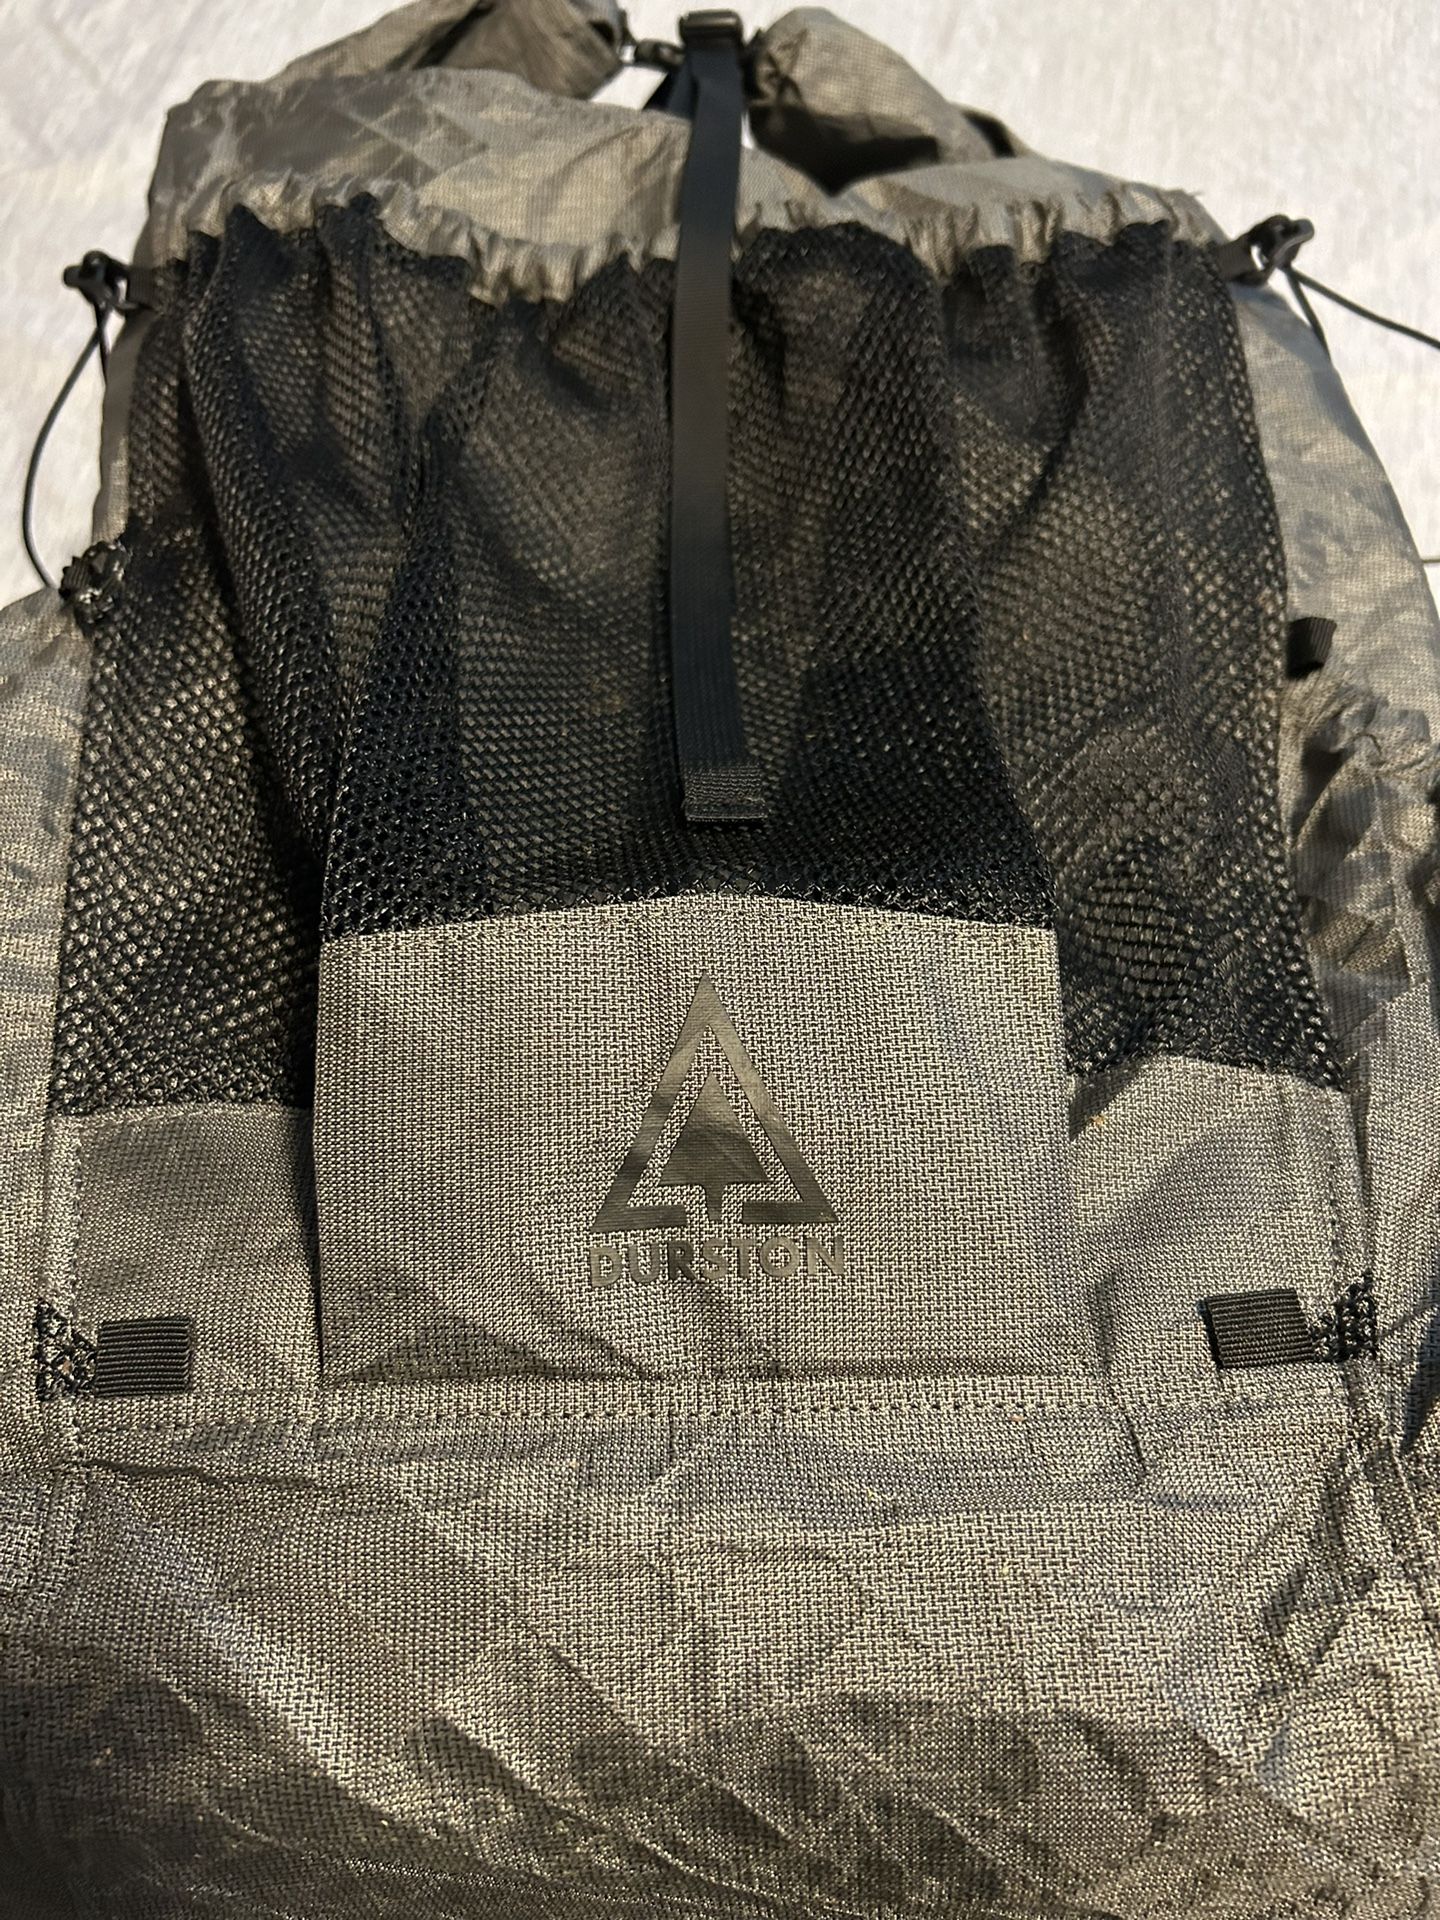 Durston Kakwa 55 Ultralight Backpack 